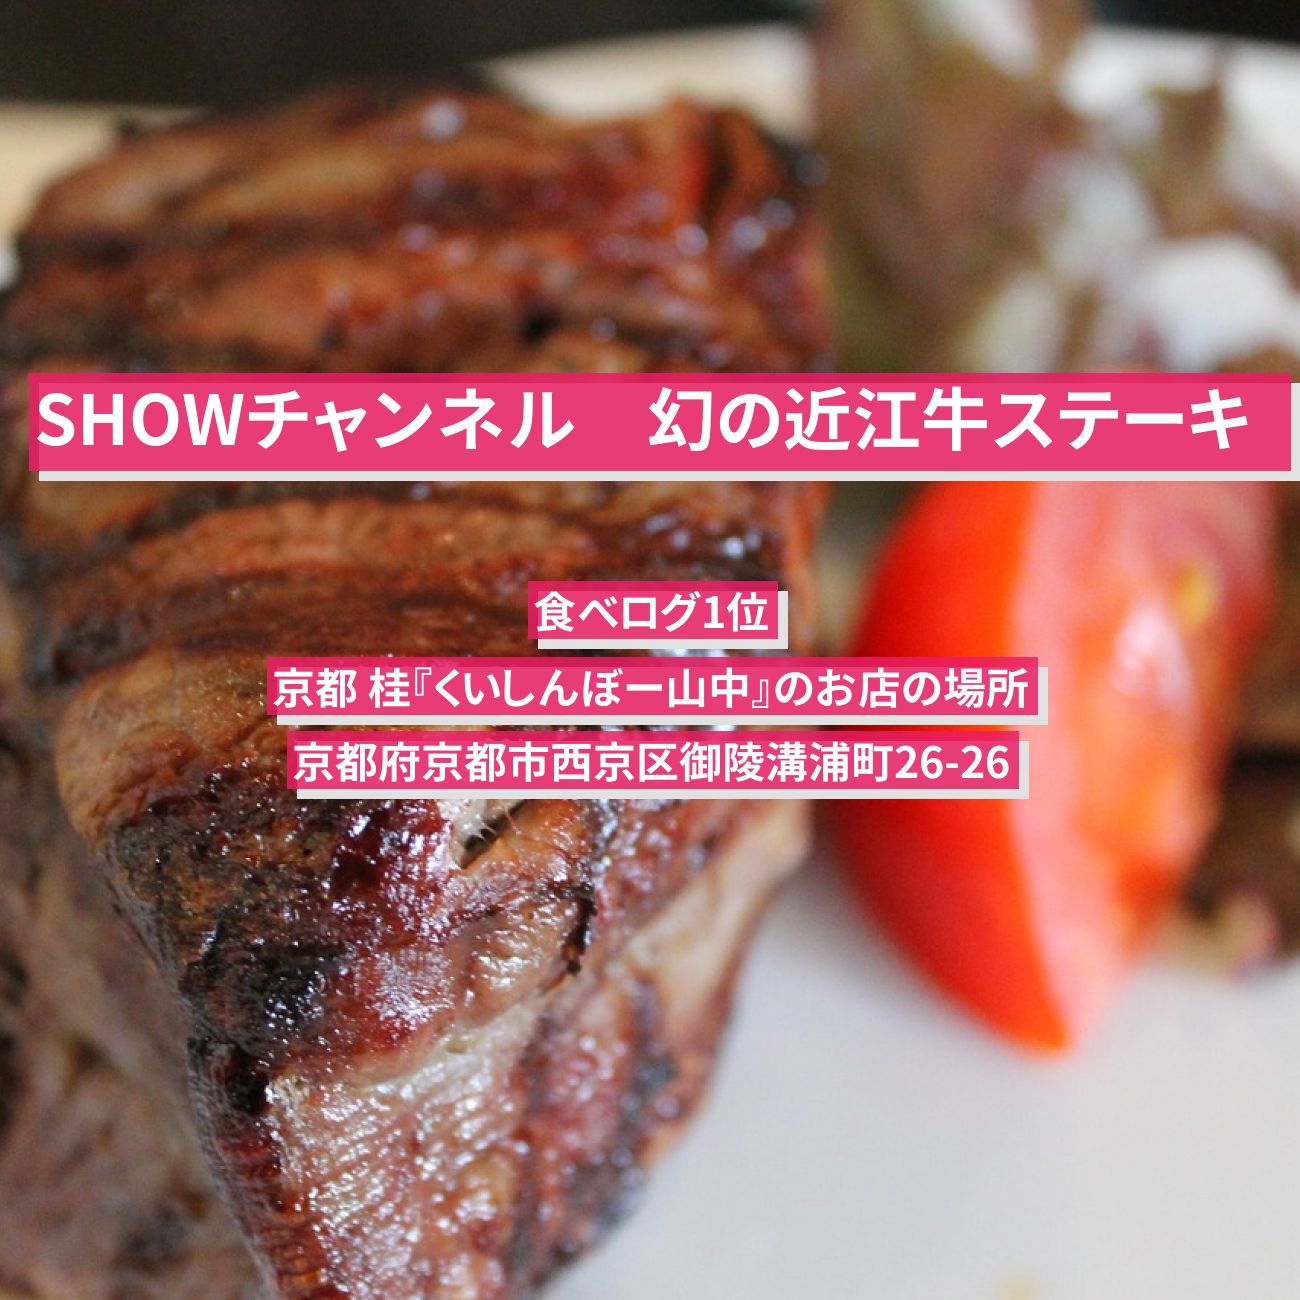 【SHOWチャンネル】幻の近江牛ステーキ・ハンバーグ (食べログ1位) 京都 桂『くいしんぼー山中』のお店の場所